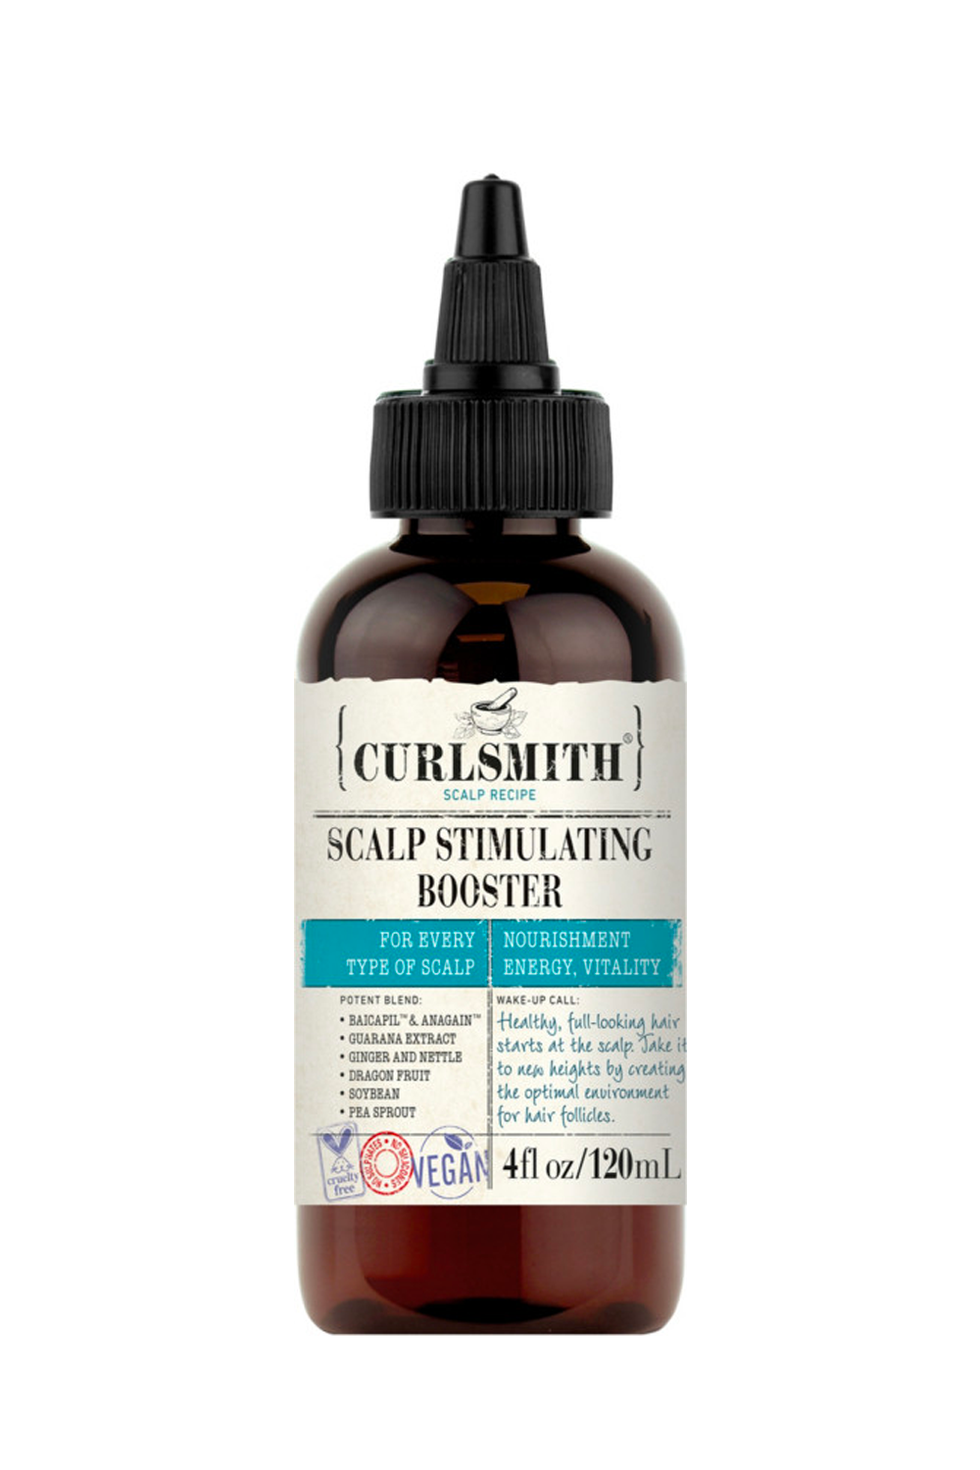 Curlsmith Scalp Recipe Scalp Stimulating Booster